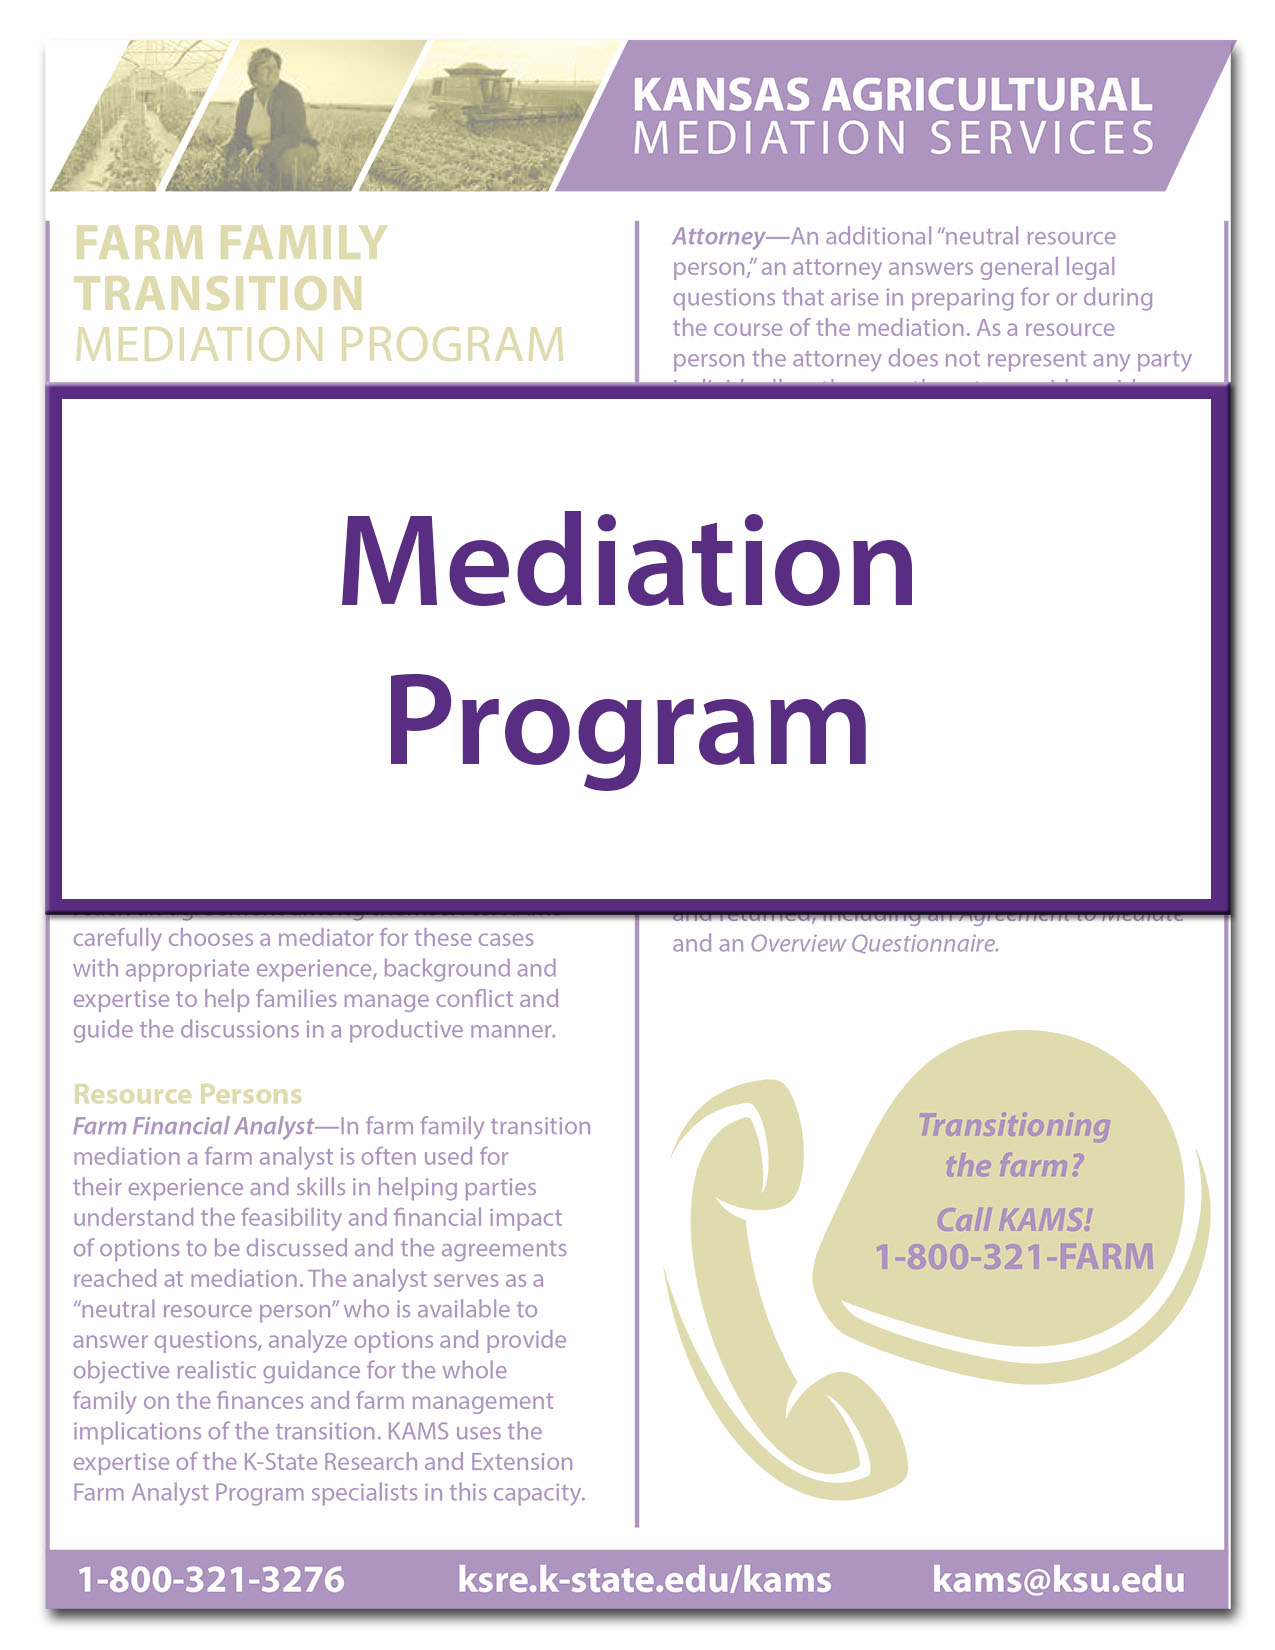 KAMS Mediation Program